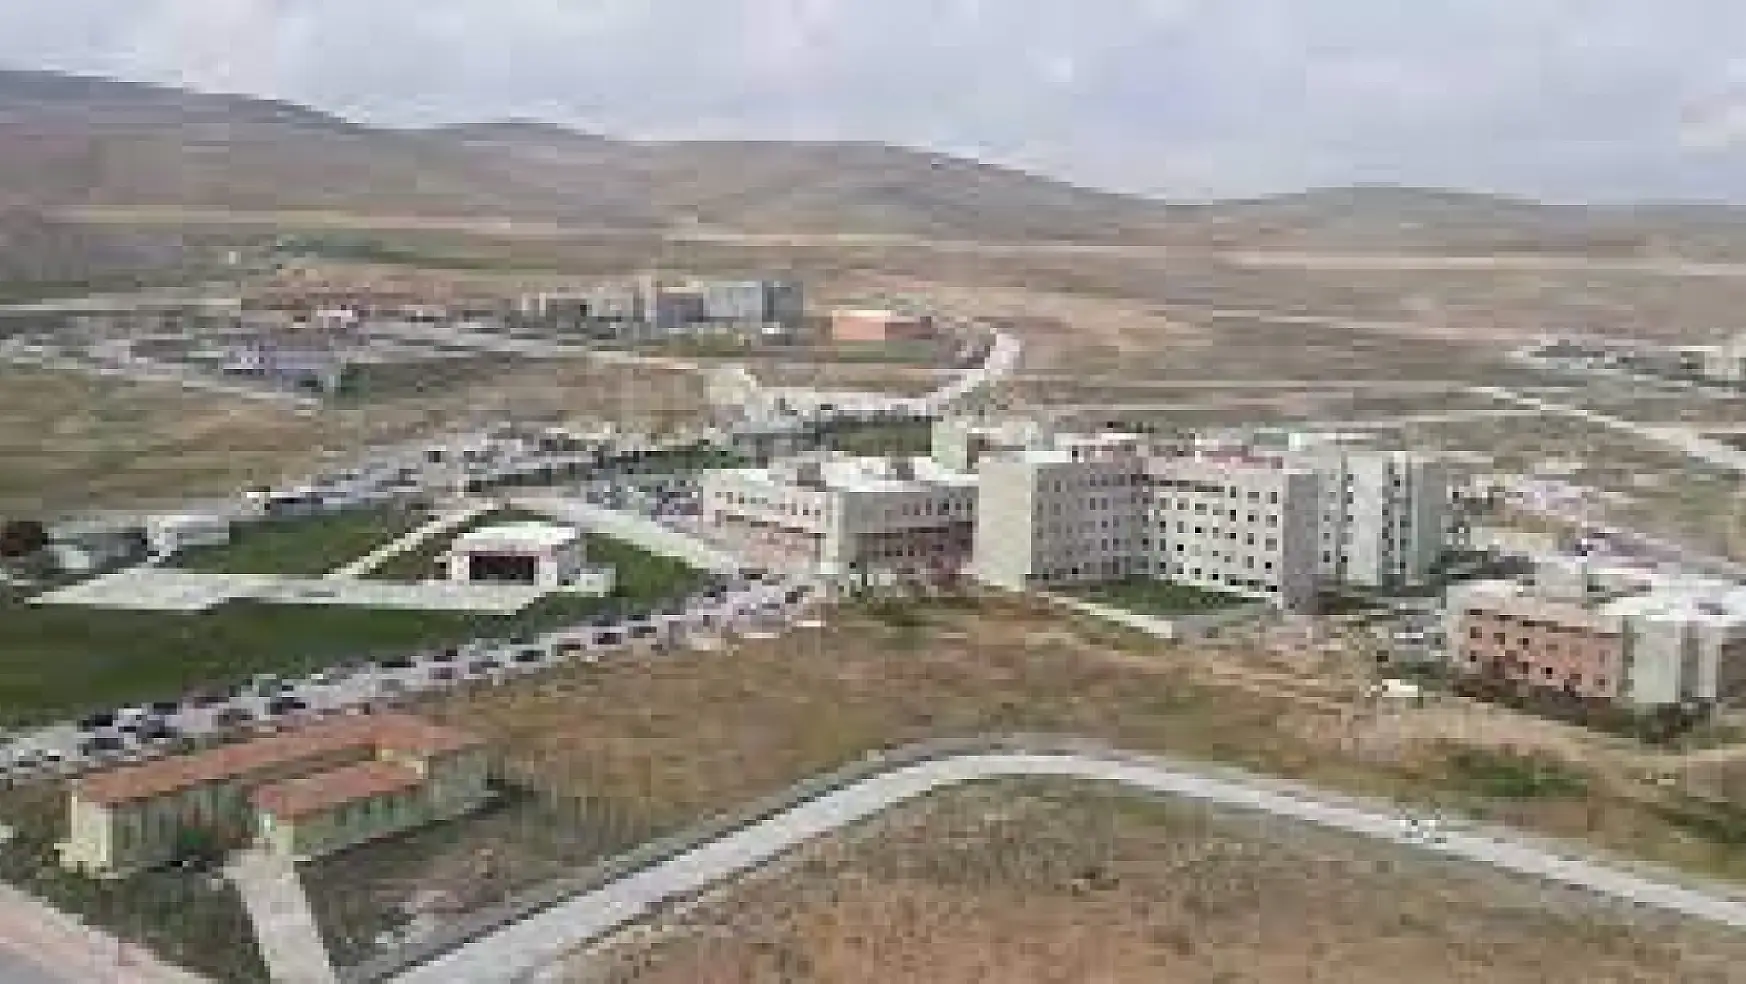 Konya'da bir hastanenin girişinde yer alan ve tartışmalara neden olan yazıyla ilgili gerçekler belli oldu: Muhalif kesimin paylaşımları doğru değil!